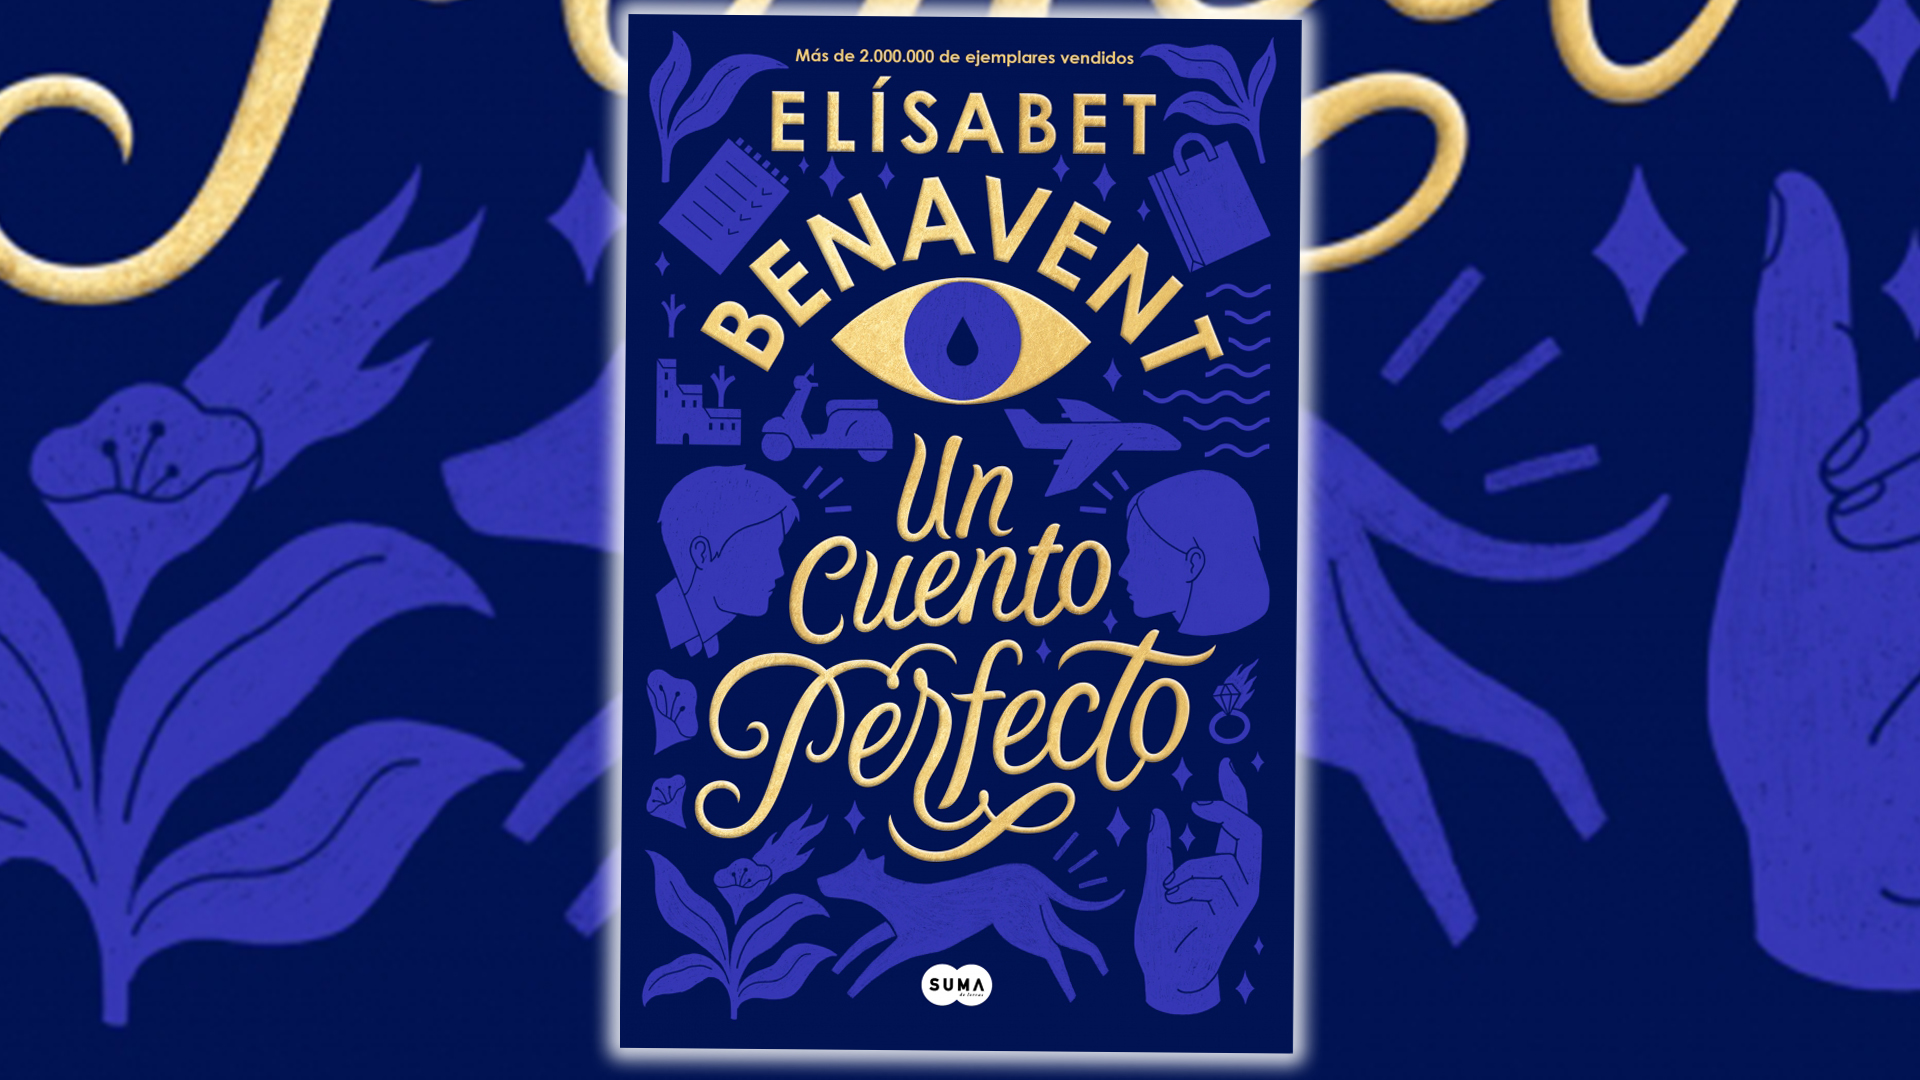 Un cuento perfecto - Elisabet Benavent